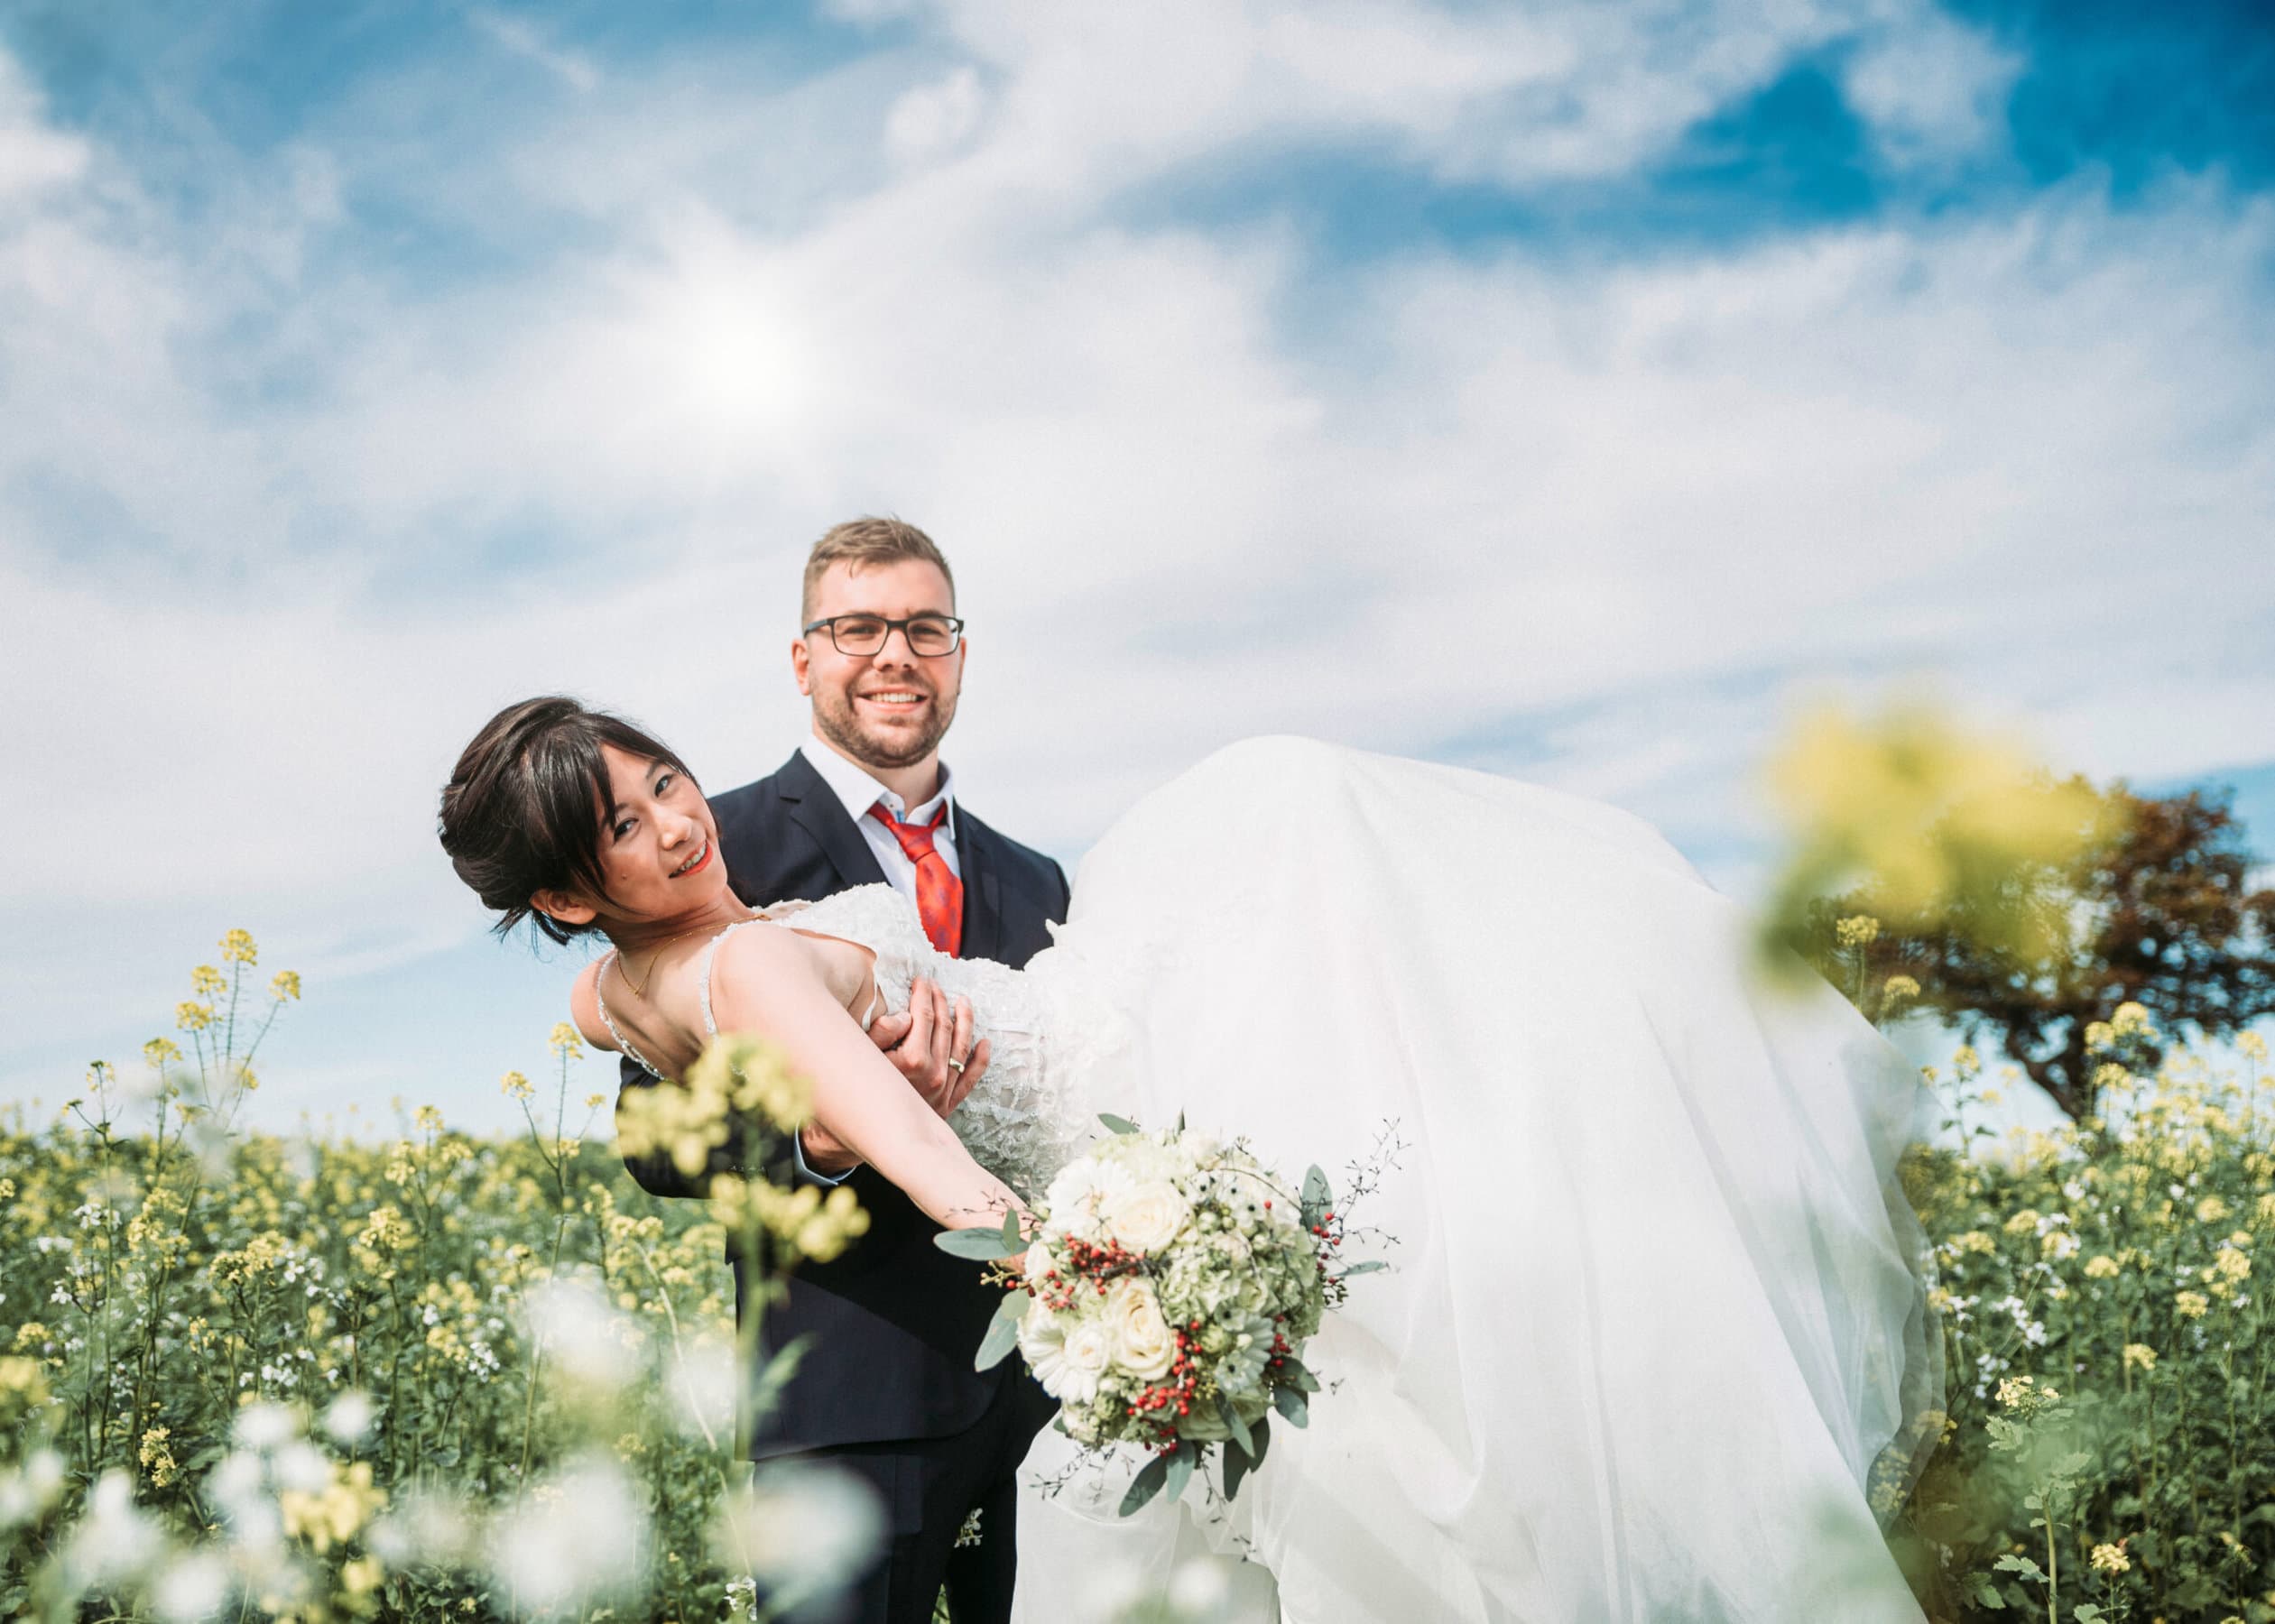 Ein Hochzeitsfoto im Rapsfeld bei Sonnenschein. Der Bräutigam trägt die Braut auf den Händen.